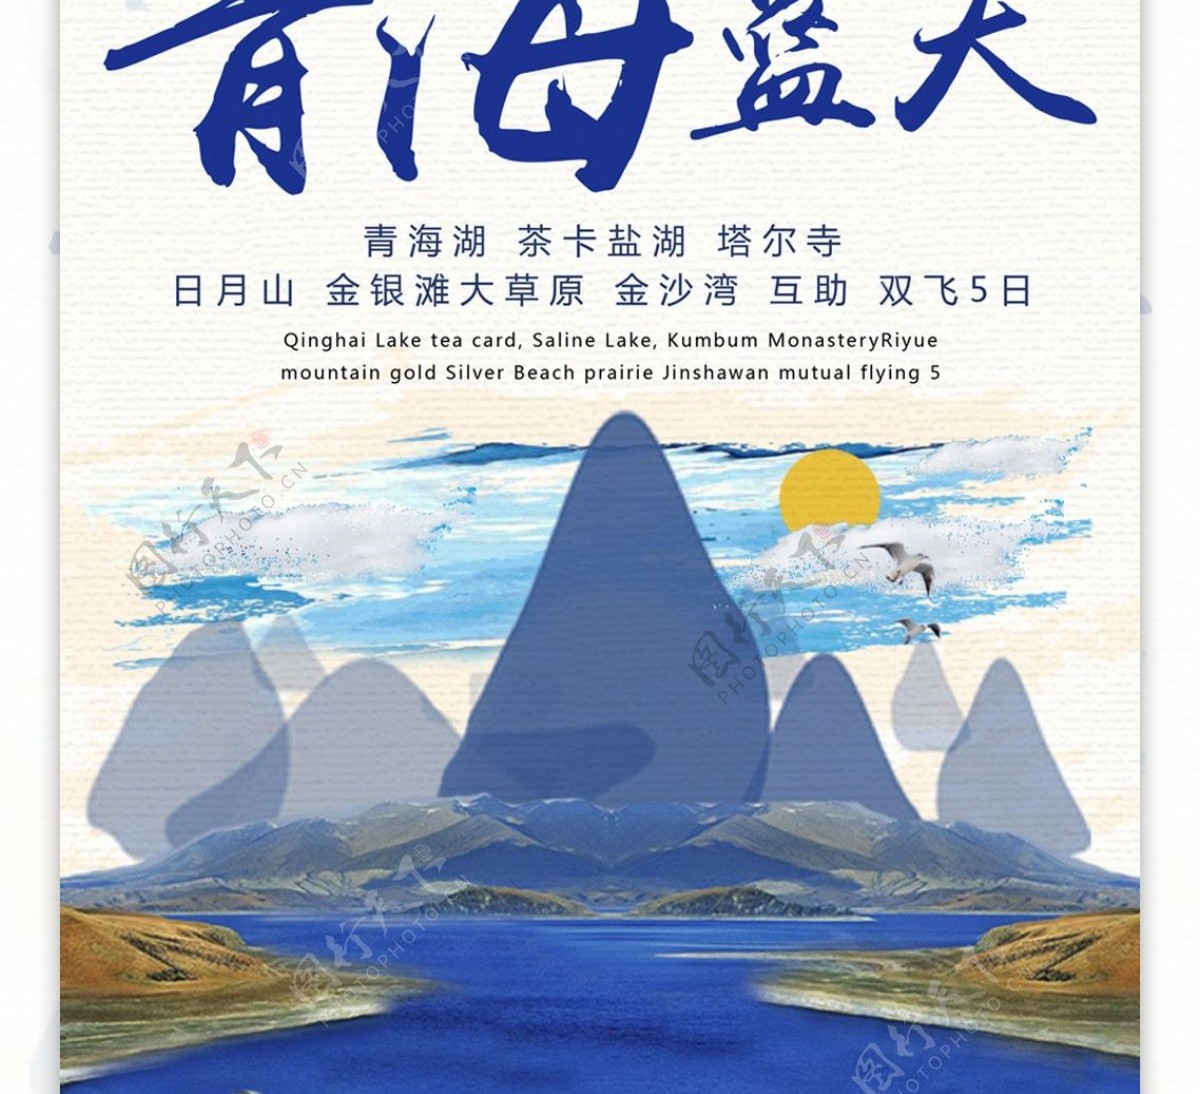 原创插画中国风青海旅行展架设计